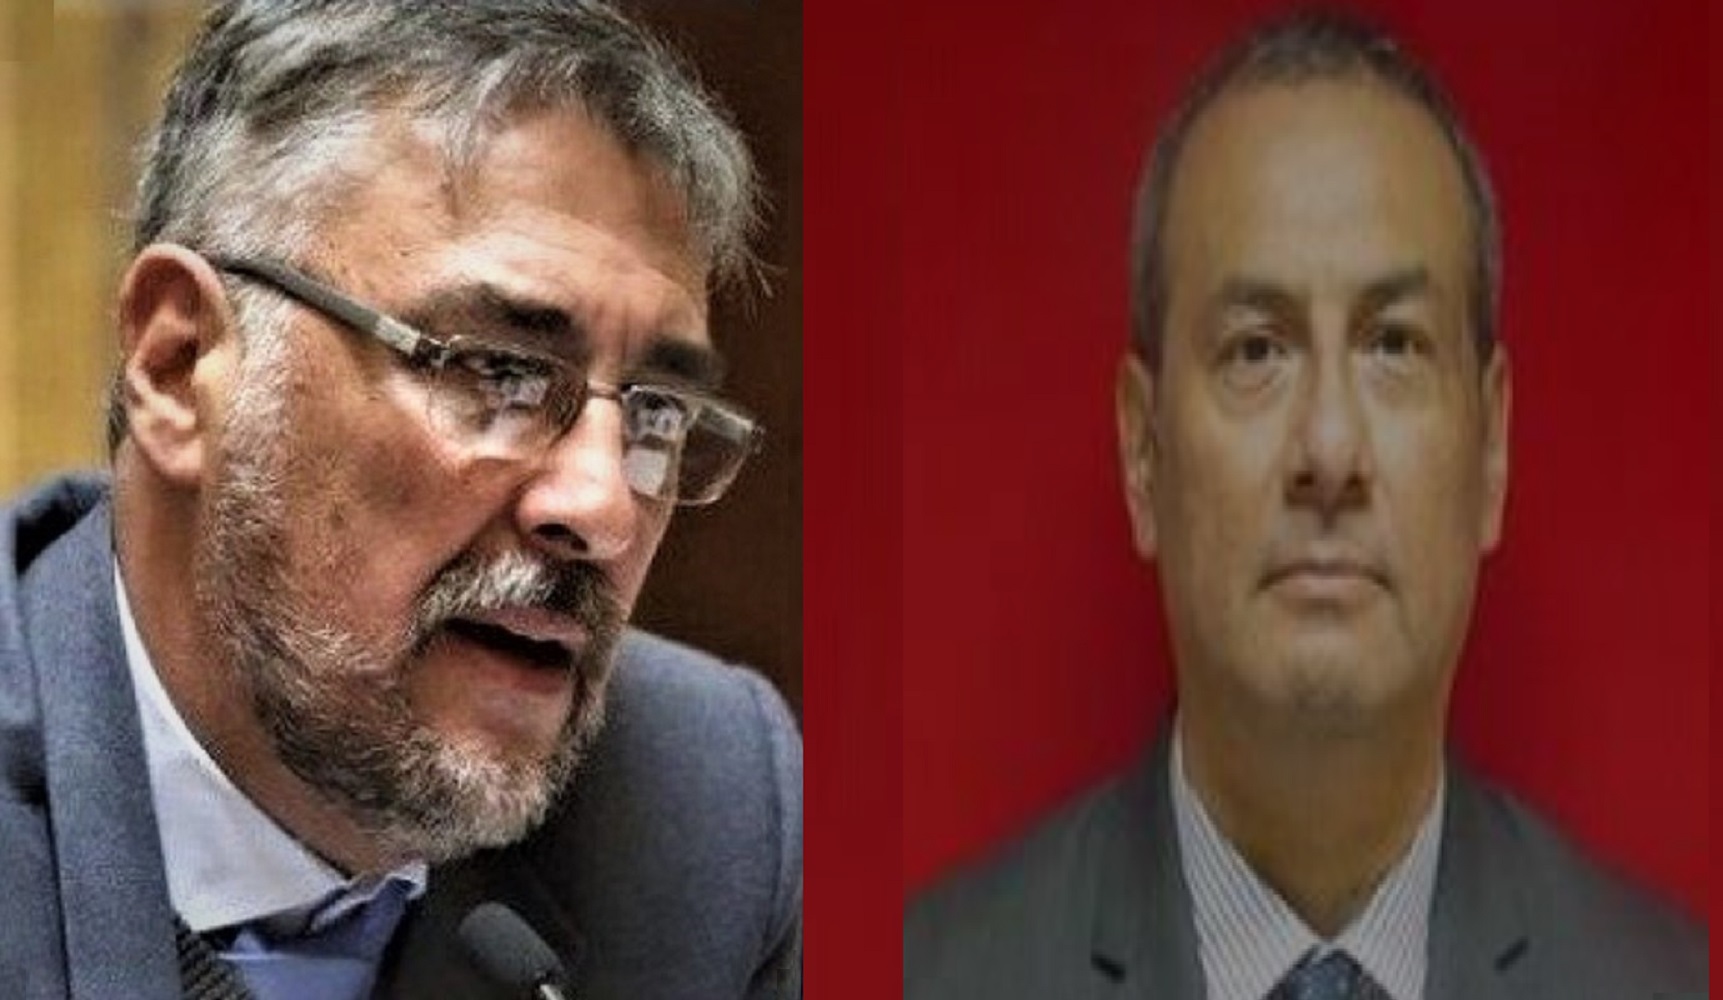 Raúl Molina, jefe de gabinete técnico y Walter Iberos, subsecretario general, ambos del Despacho Presidencial renunciaron irrevocablemente.